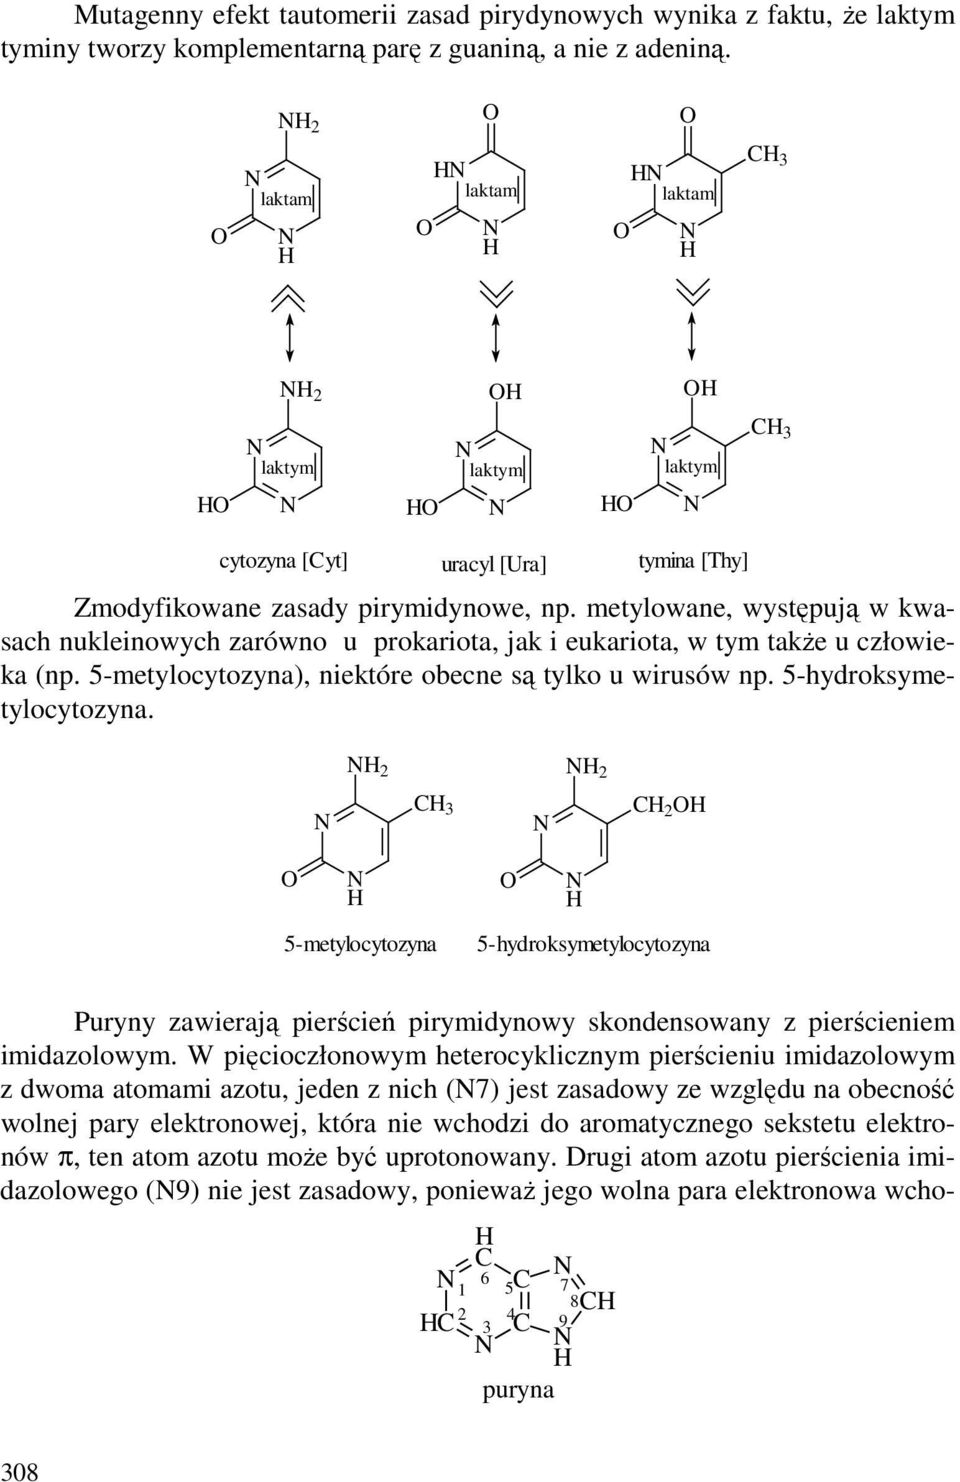 metylowane, występują w kwasach nukleinowych zarówno u prokariota, jak i eukariota, w tym takŝe u człowieka (np. 5-metylocytozyna), niektóre obecne są tylko u wirusów np. 5-hydroksymetylocytozyna.